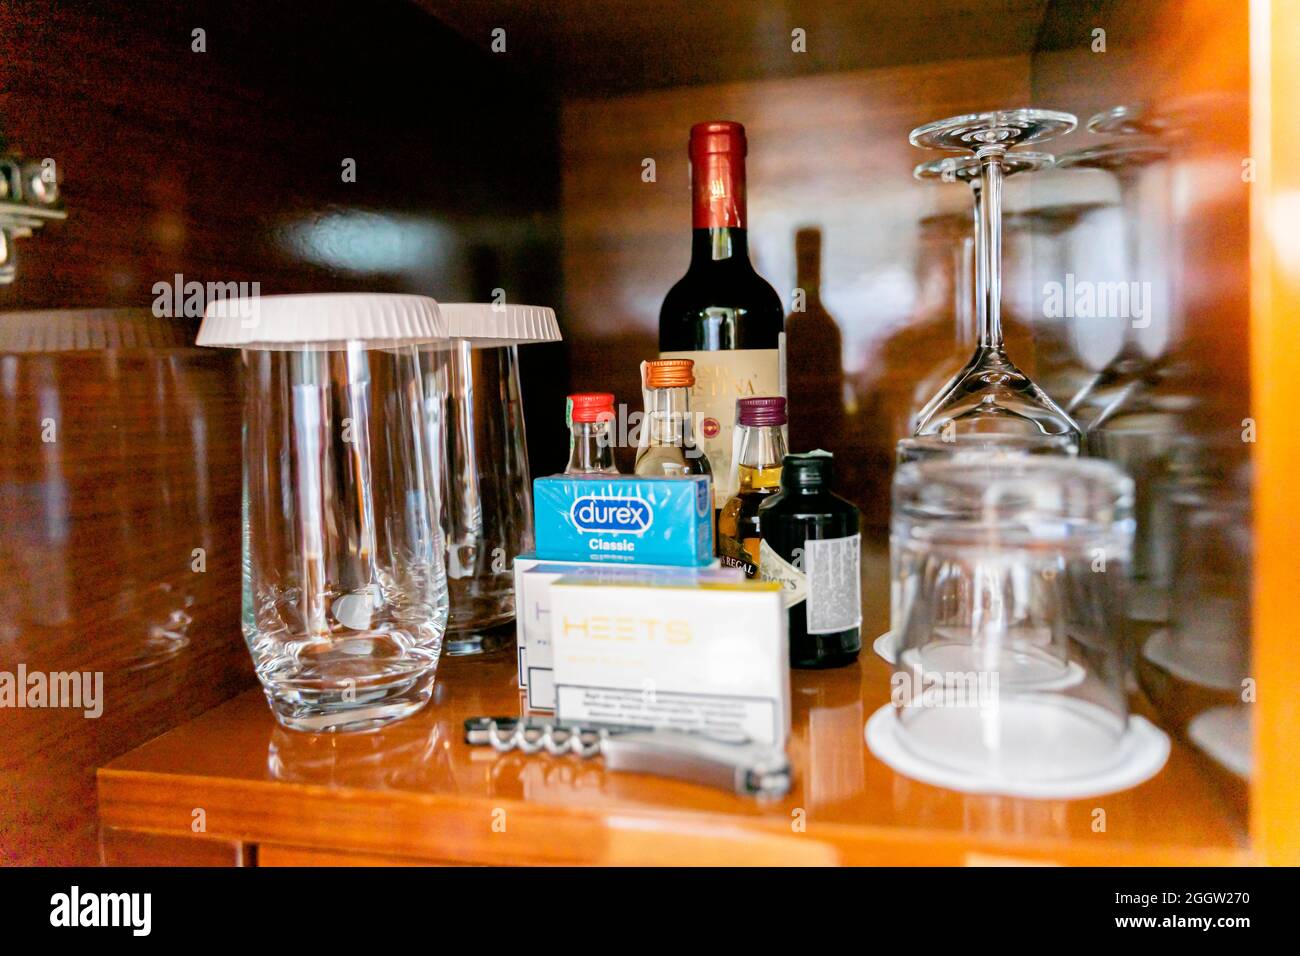 Mini bar contents including condoms and e-cigarettes, wine Stock Photo